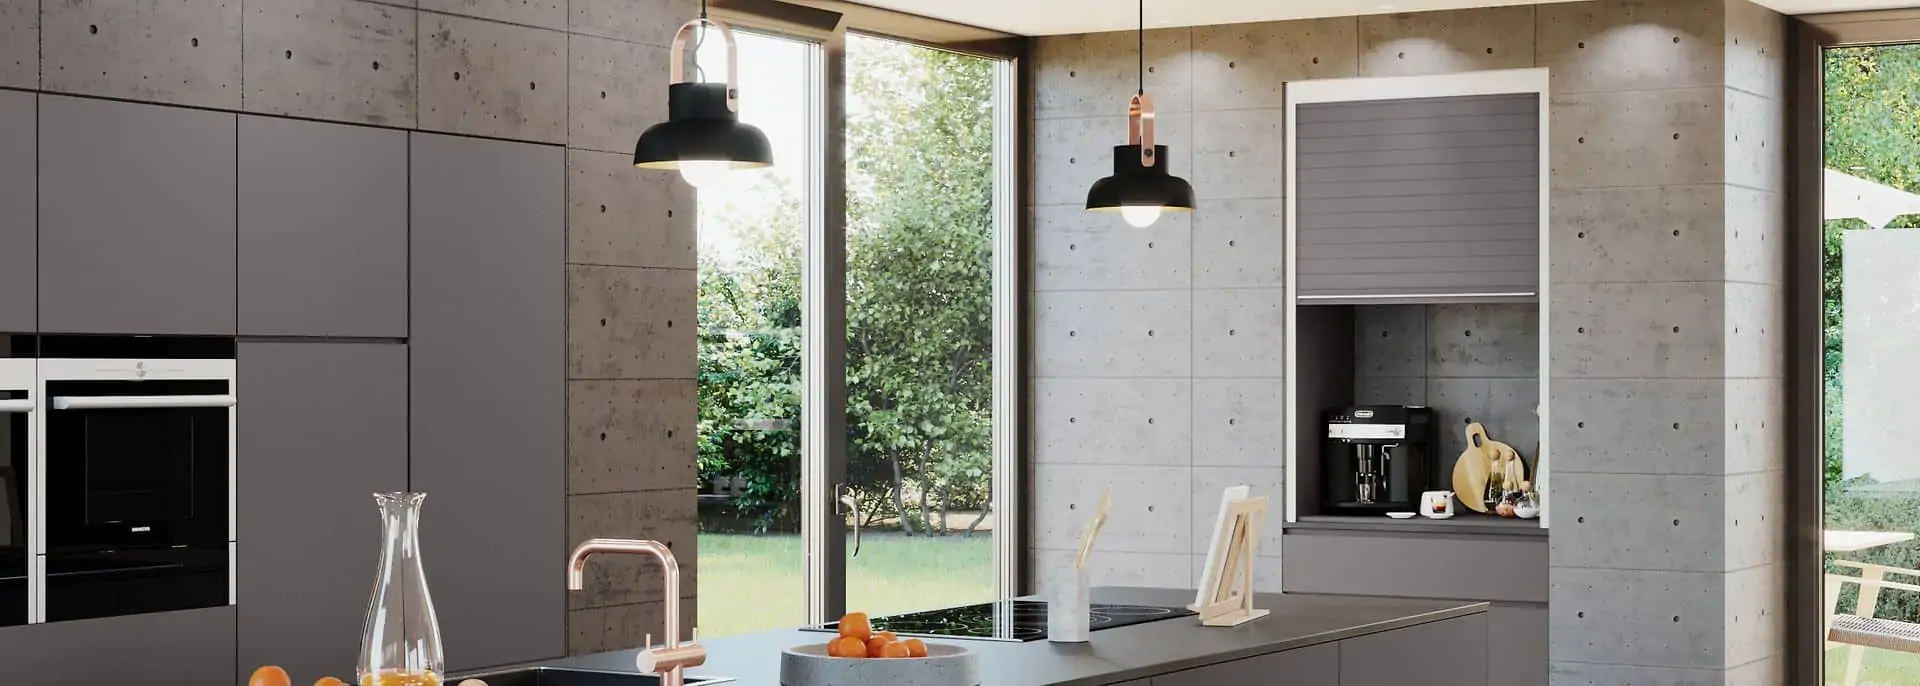 kitchen interior solutions by REHAU